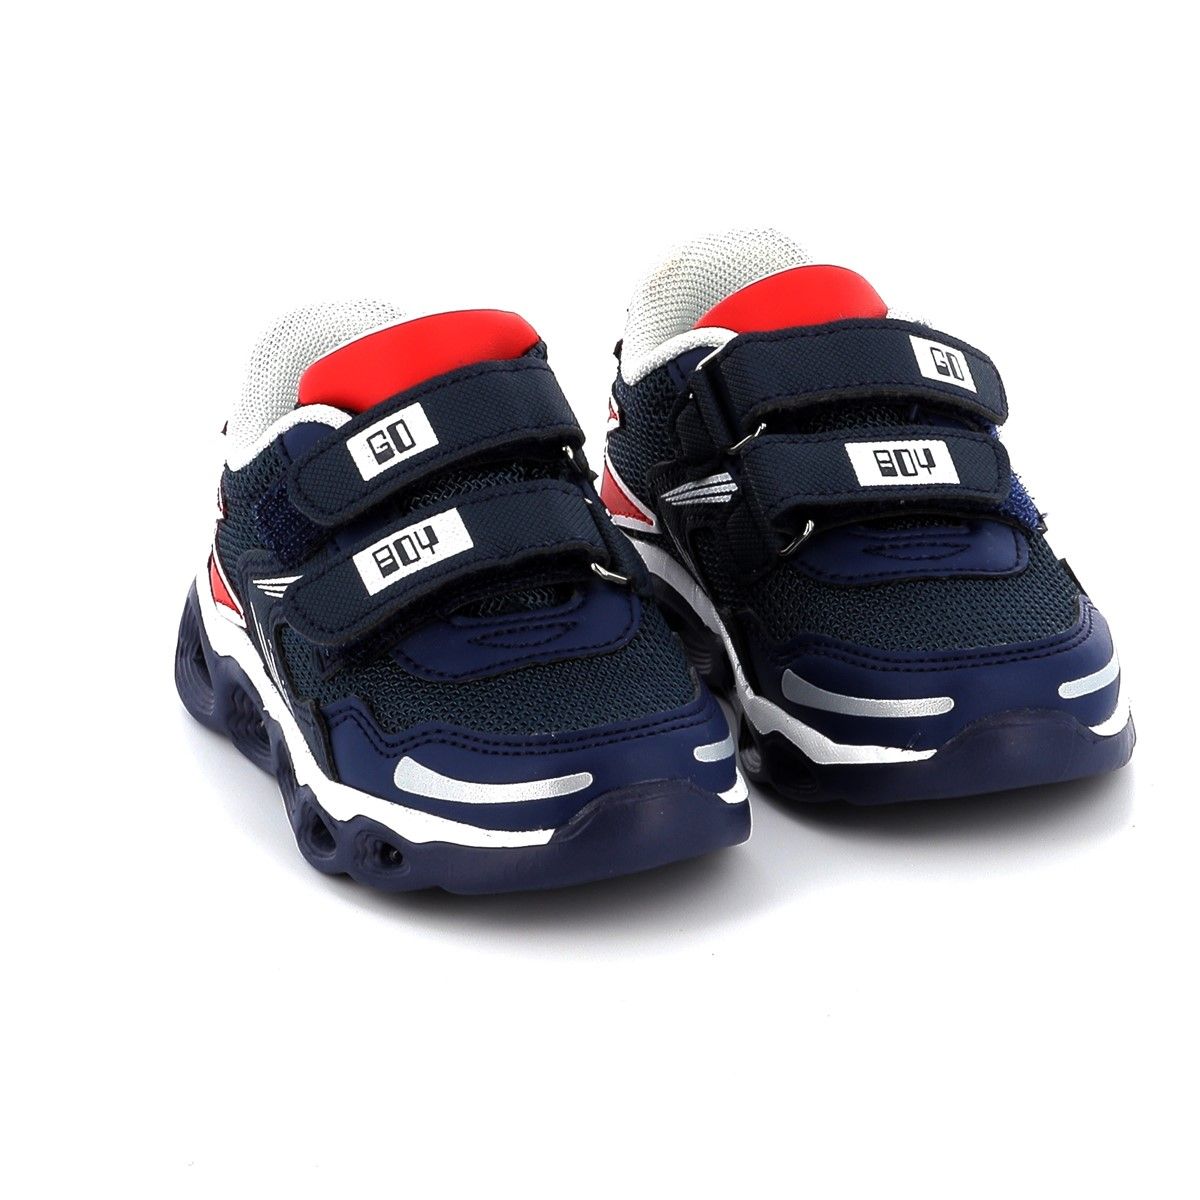 Παιδικό Χαμηλό Casual με Φωτάκια Chicco Shoe Collin για Αγόρι Χρώματος Μπλε 0106707000000